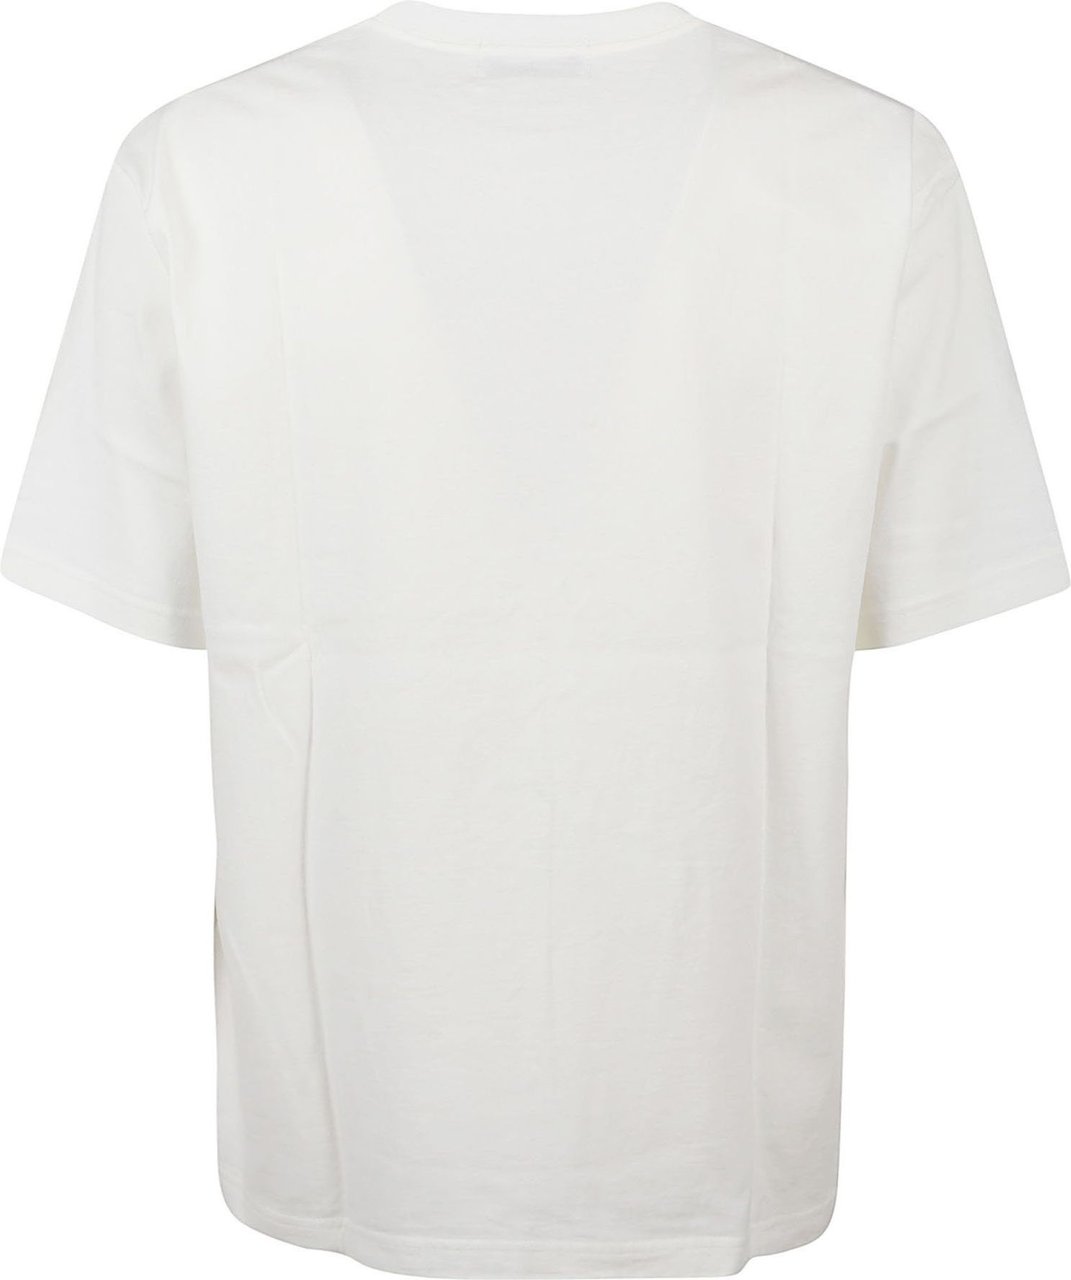 AMBUSH Neon Graphic T-shirt White Wit